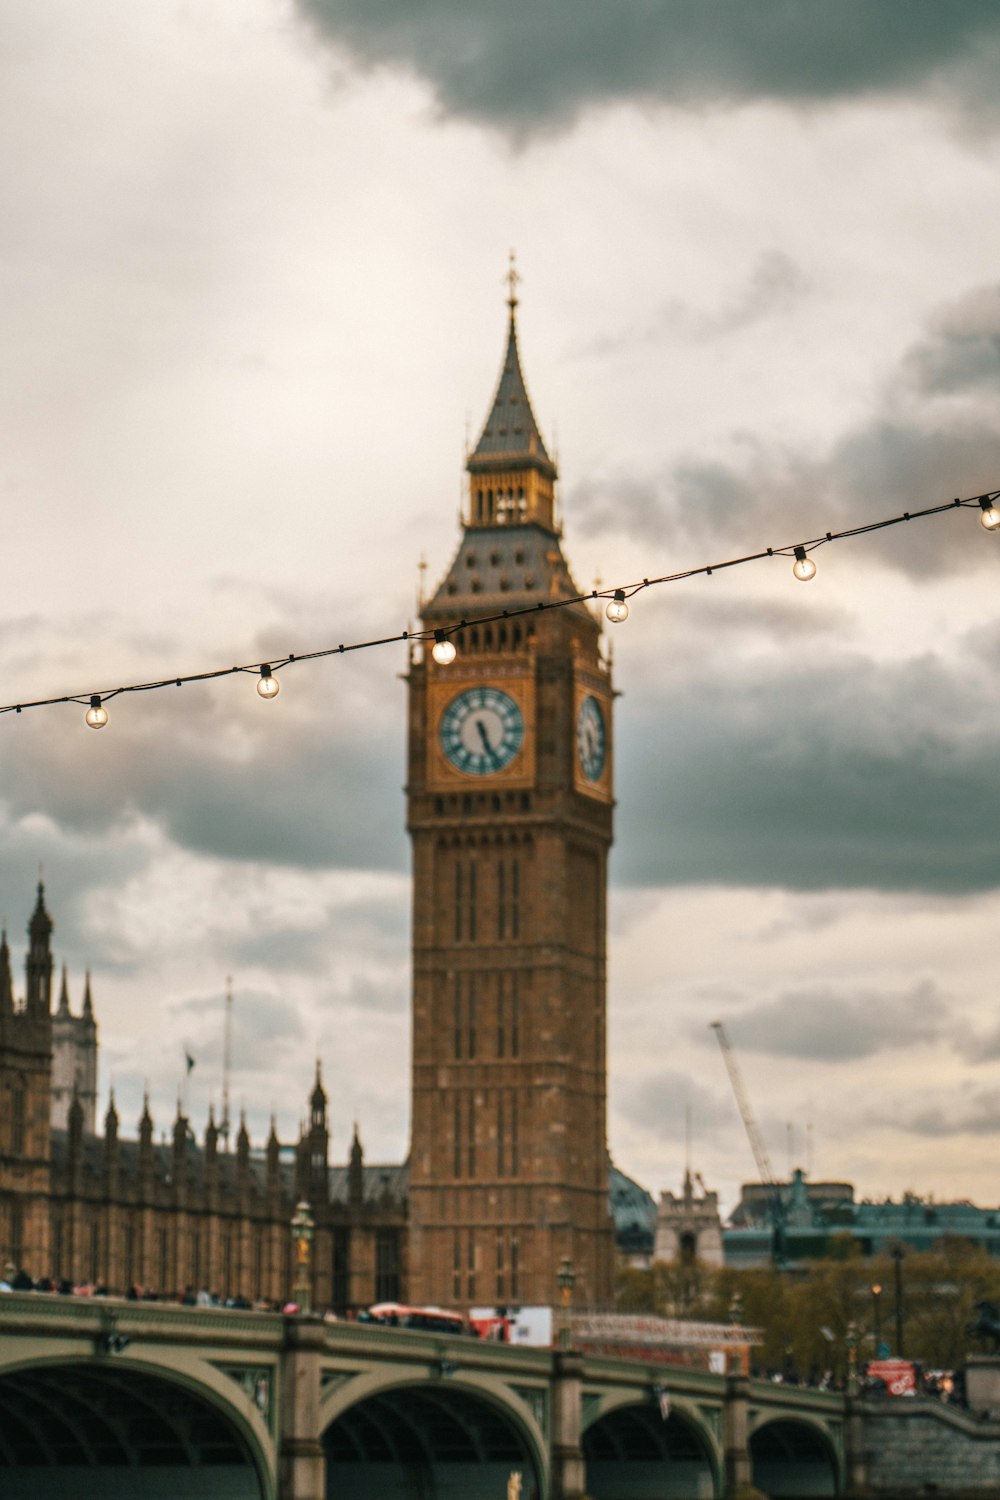 Der Big Ben Clock Tower, der über der City of London thront